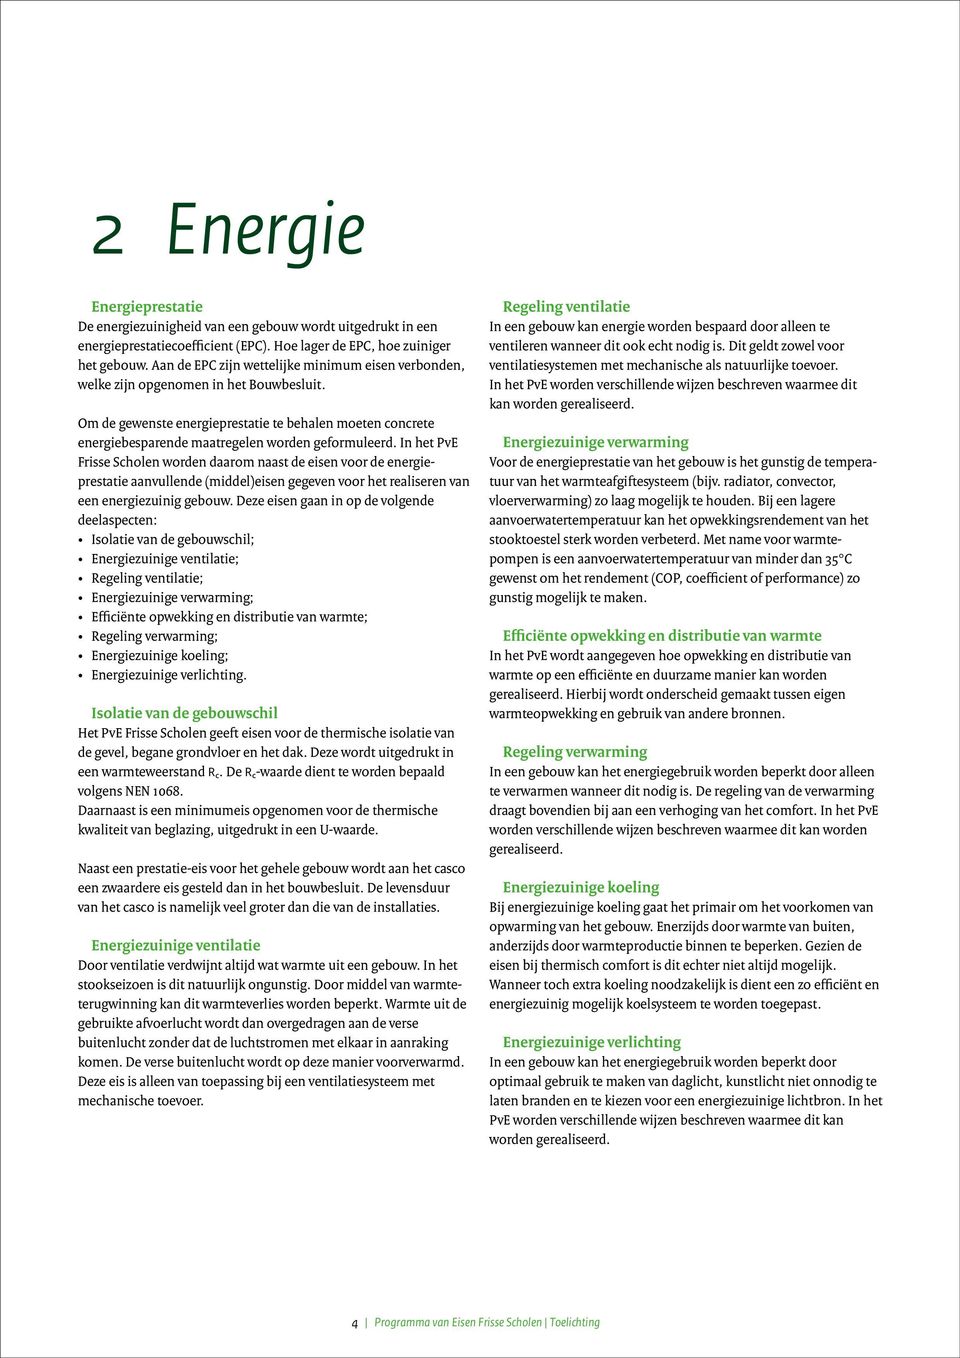 Om de gewenste energieprestatie te behalen moeten concrete energiebesparende maatregelen worden geformuleerd.